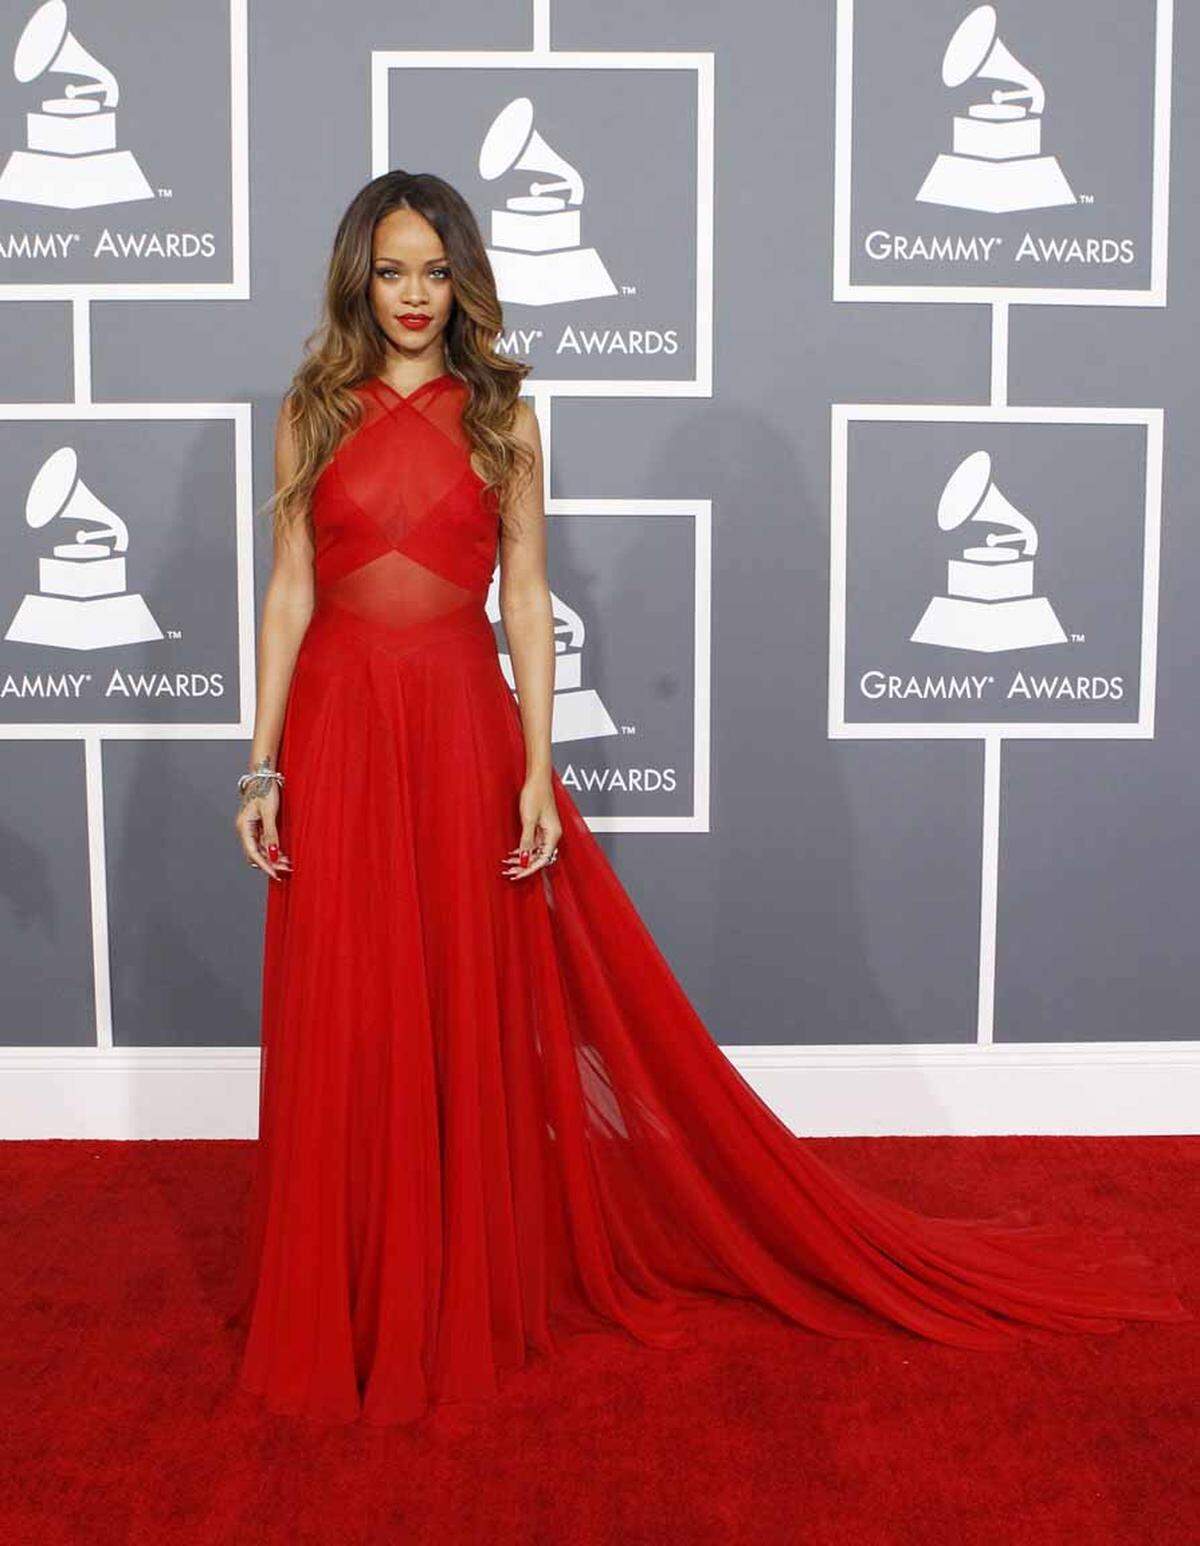 Ganz skandalfrei zeigte sich Sängerin Rihanna auf dem roten Teppich der Grammy Awards. Sie trug eine elegante rote Robe von Azzedine Alaia.